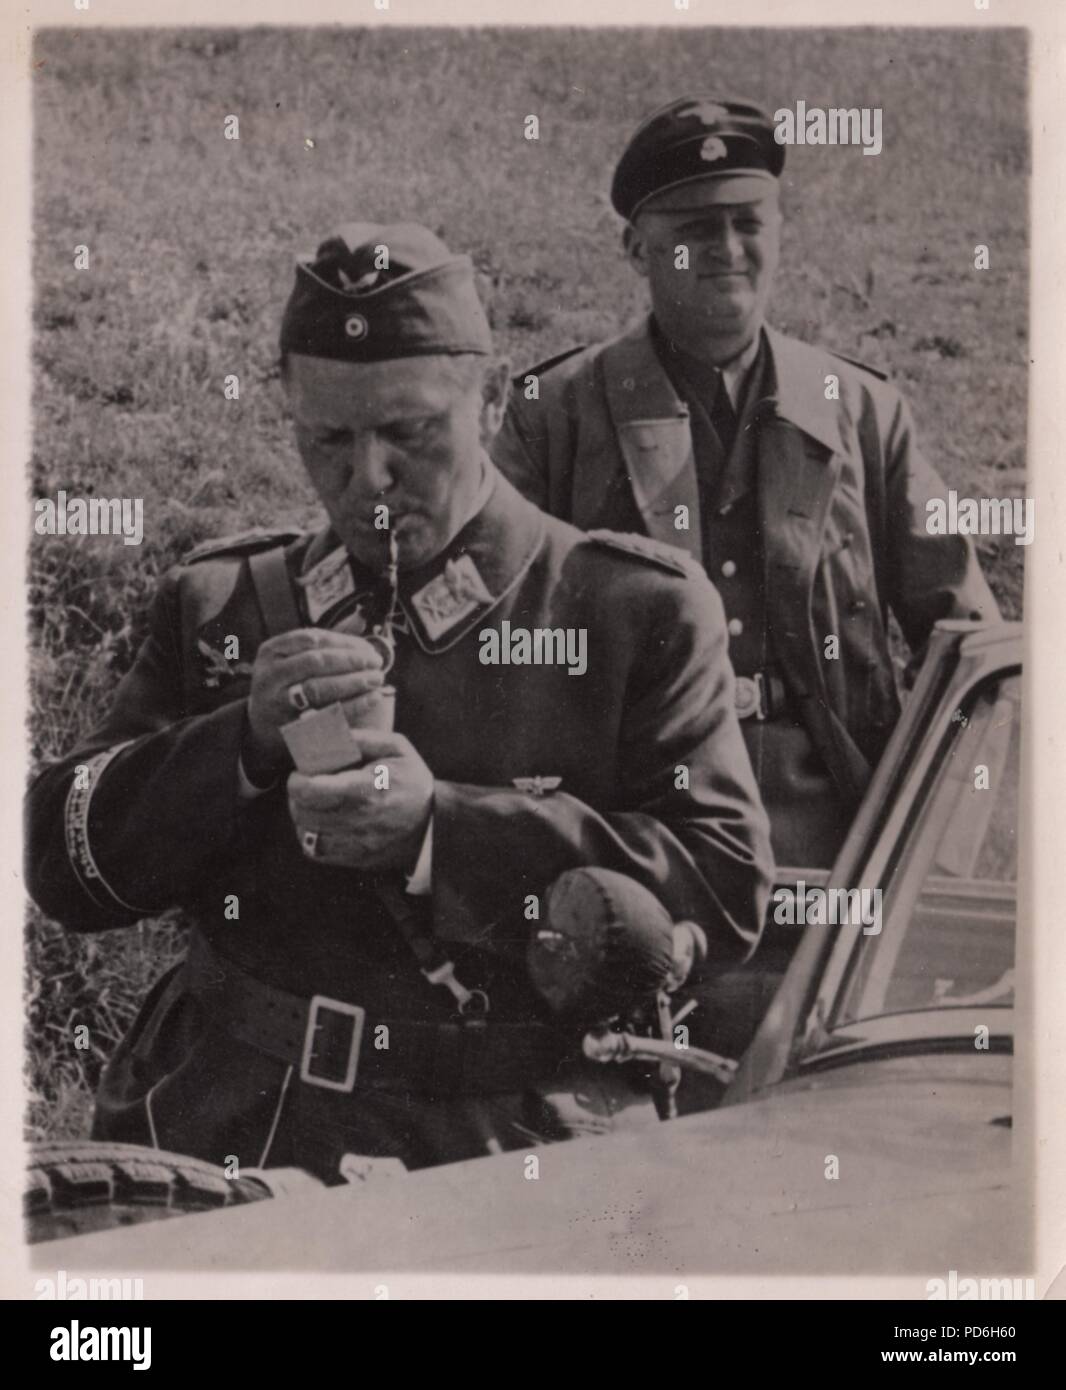 Droit de l'album photo de l'Oberleutnant Oscar Müller de la Kampfgeschwader 1 : Lors d'une visite à II. La Kampfgeschwader 1 Gruppe, le Reichsmarschall Hermann Göring, allume sa pipe, tandis que son chauffeur SS tient la porte de la voiture. L'été 1940 Banque D'Images